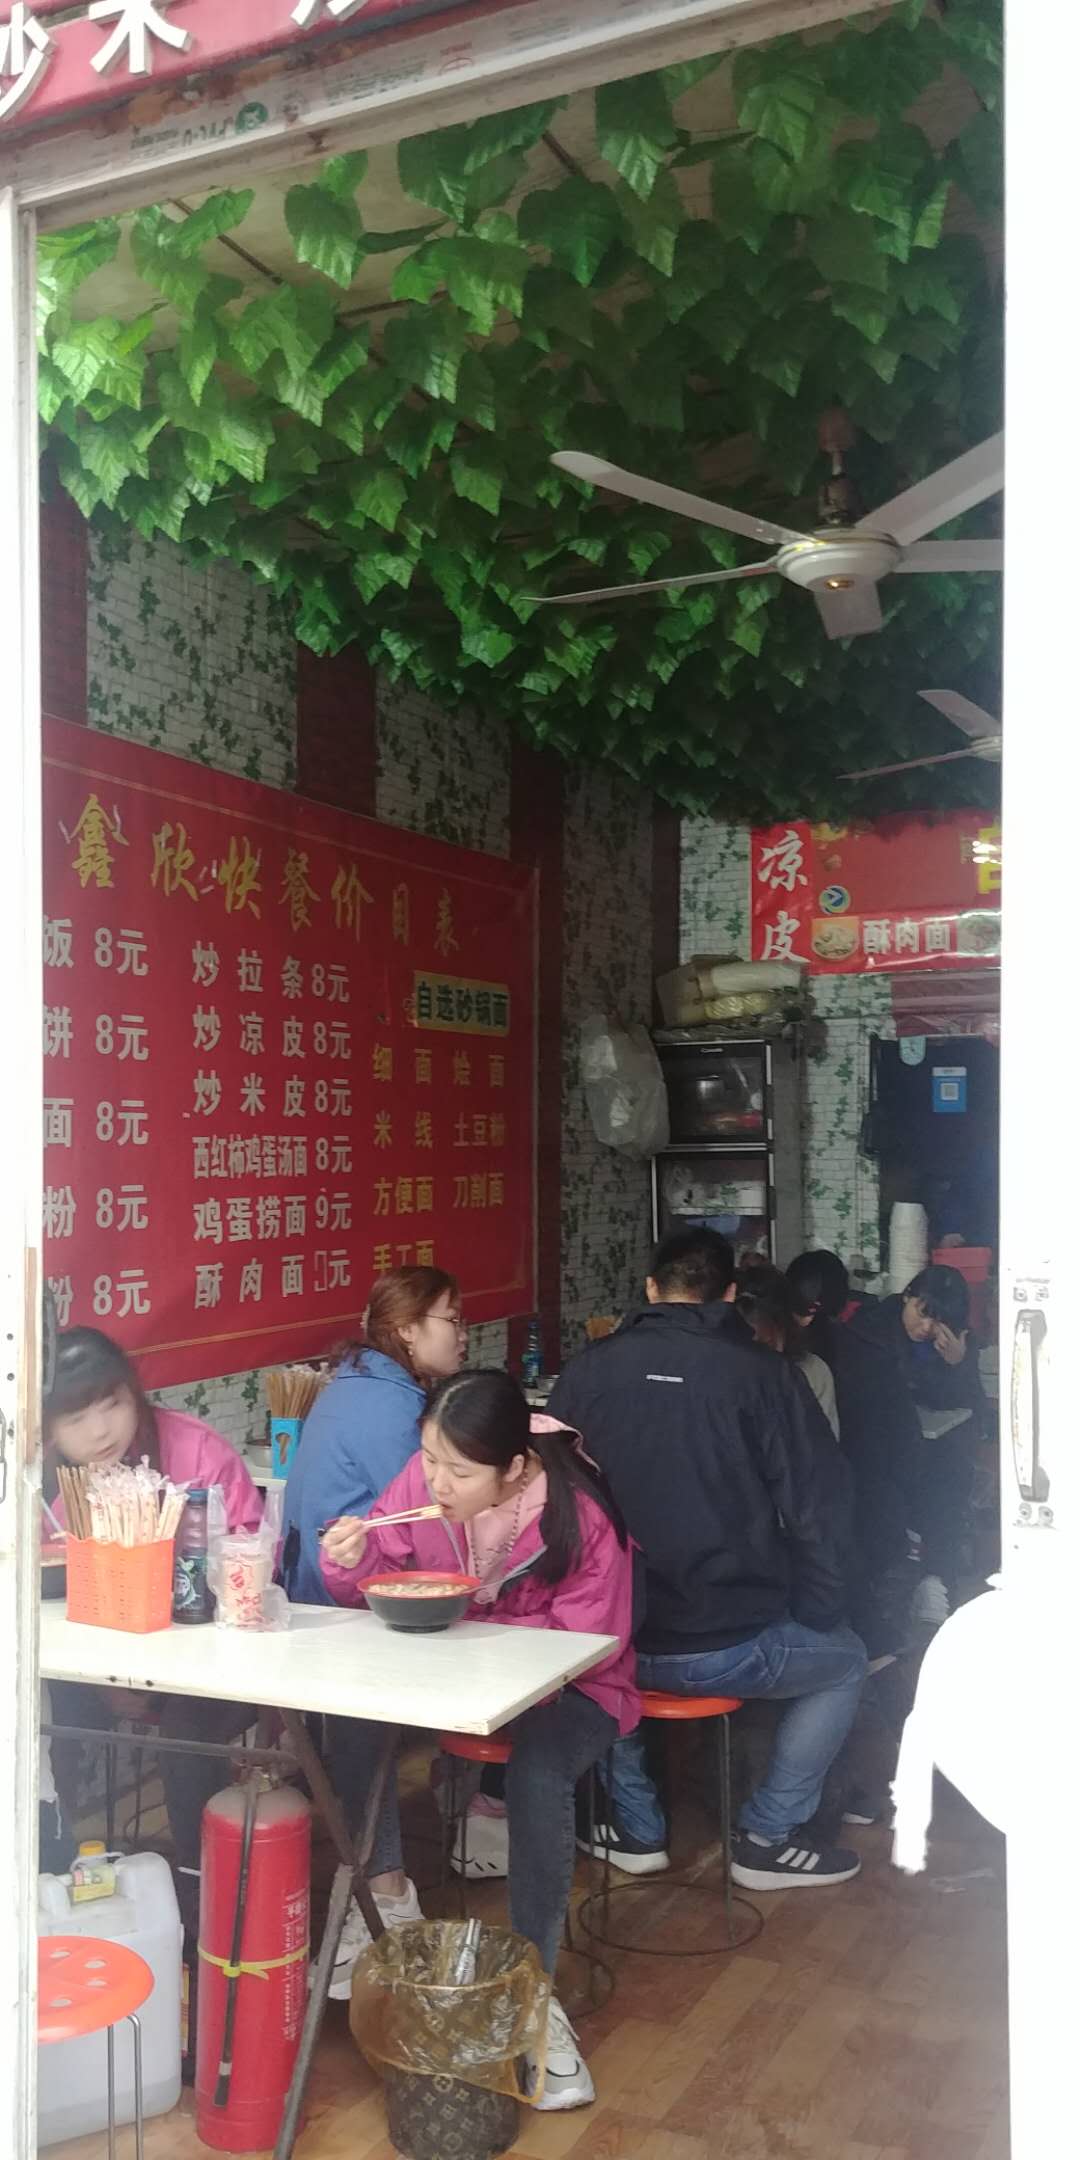 중국의 대표적인 농민공 일터인 정저우 폭스콘의 아이폰 제조 공장에서 이주노동자들이 국수로 점심을 먹고 있다.